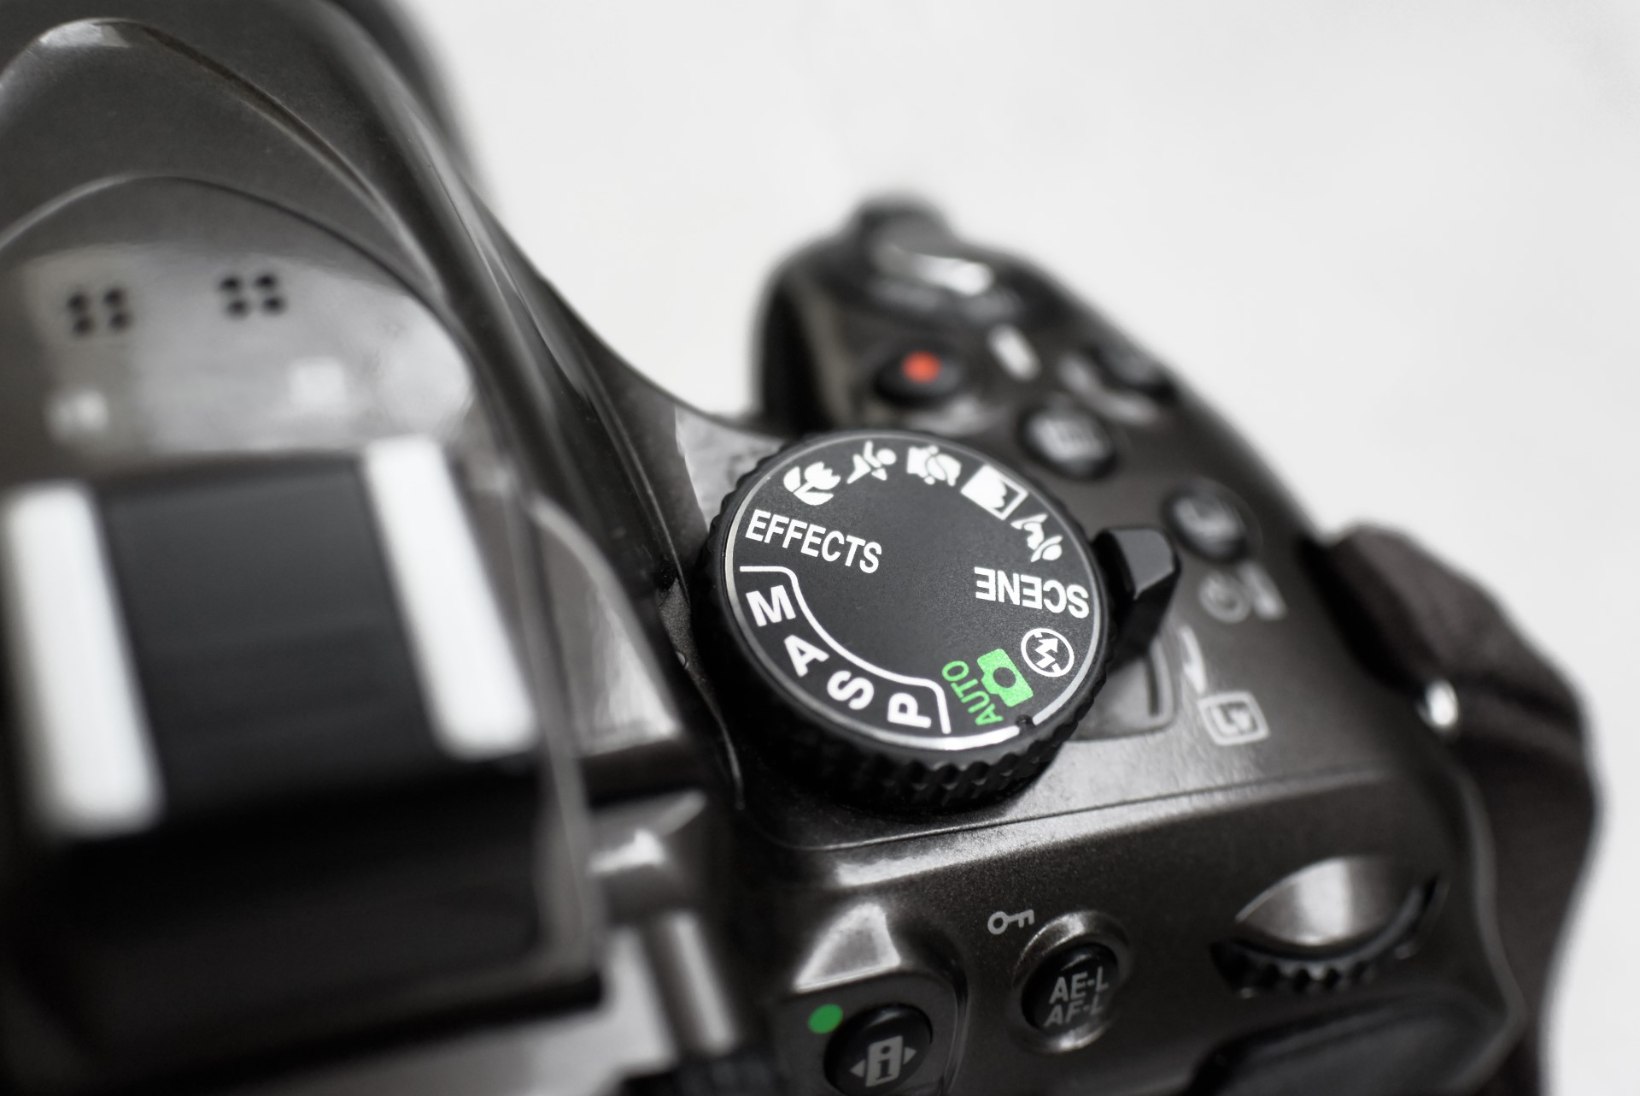 Lugeja küsib: „Miks peaks eelistama fotoaparaadi automaatrežiimile muid pildistamisrežiime?“